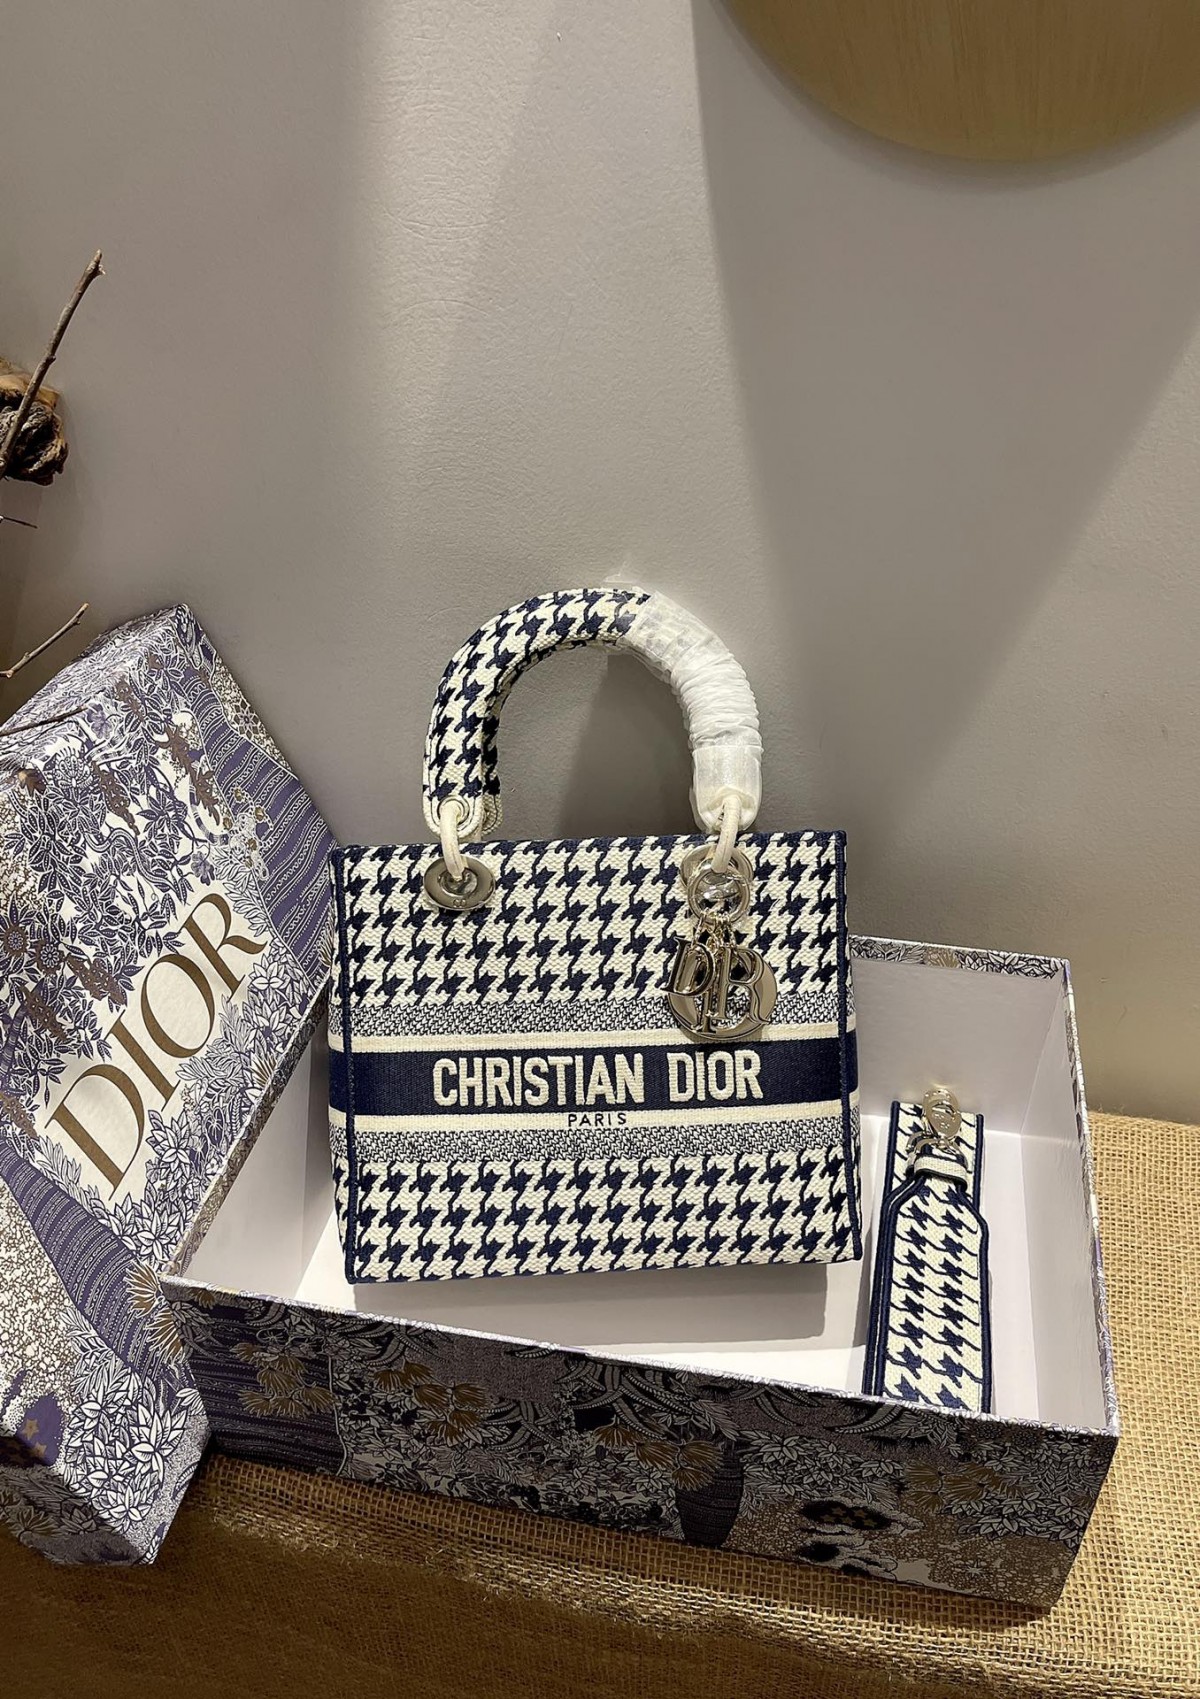 As réplicas de bolsas Oblique Lady Dior são tão lindas! (Especial de 2022) - Loja online de bolsa Louis Vuitton falsa de melhor qualidade, bolsa de designer de réplica ru